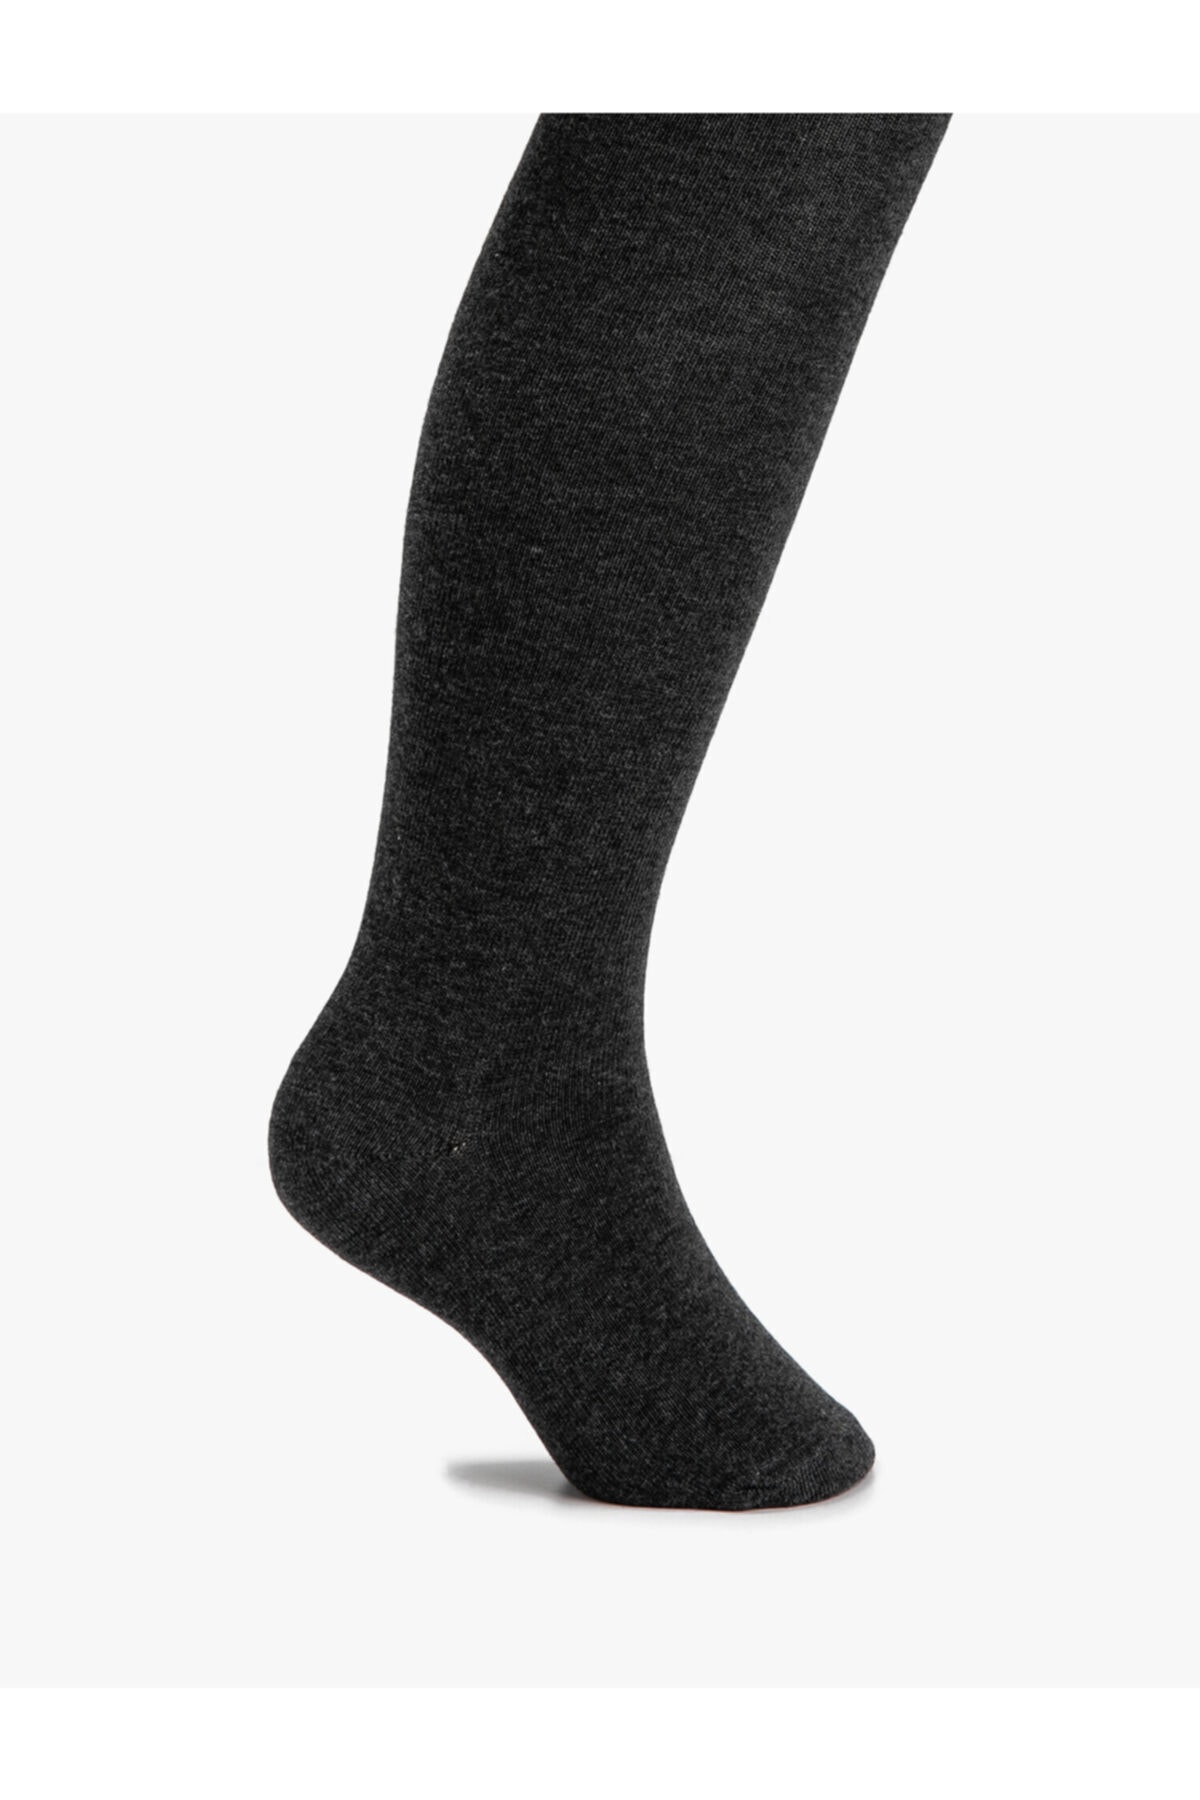 Külotlu Çorap